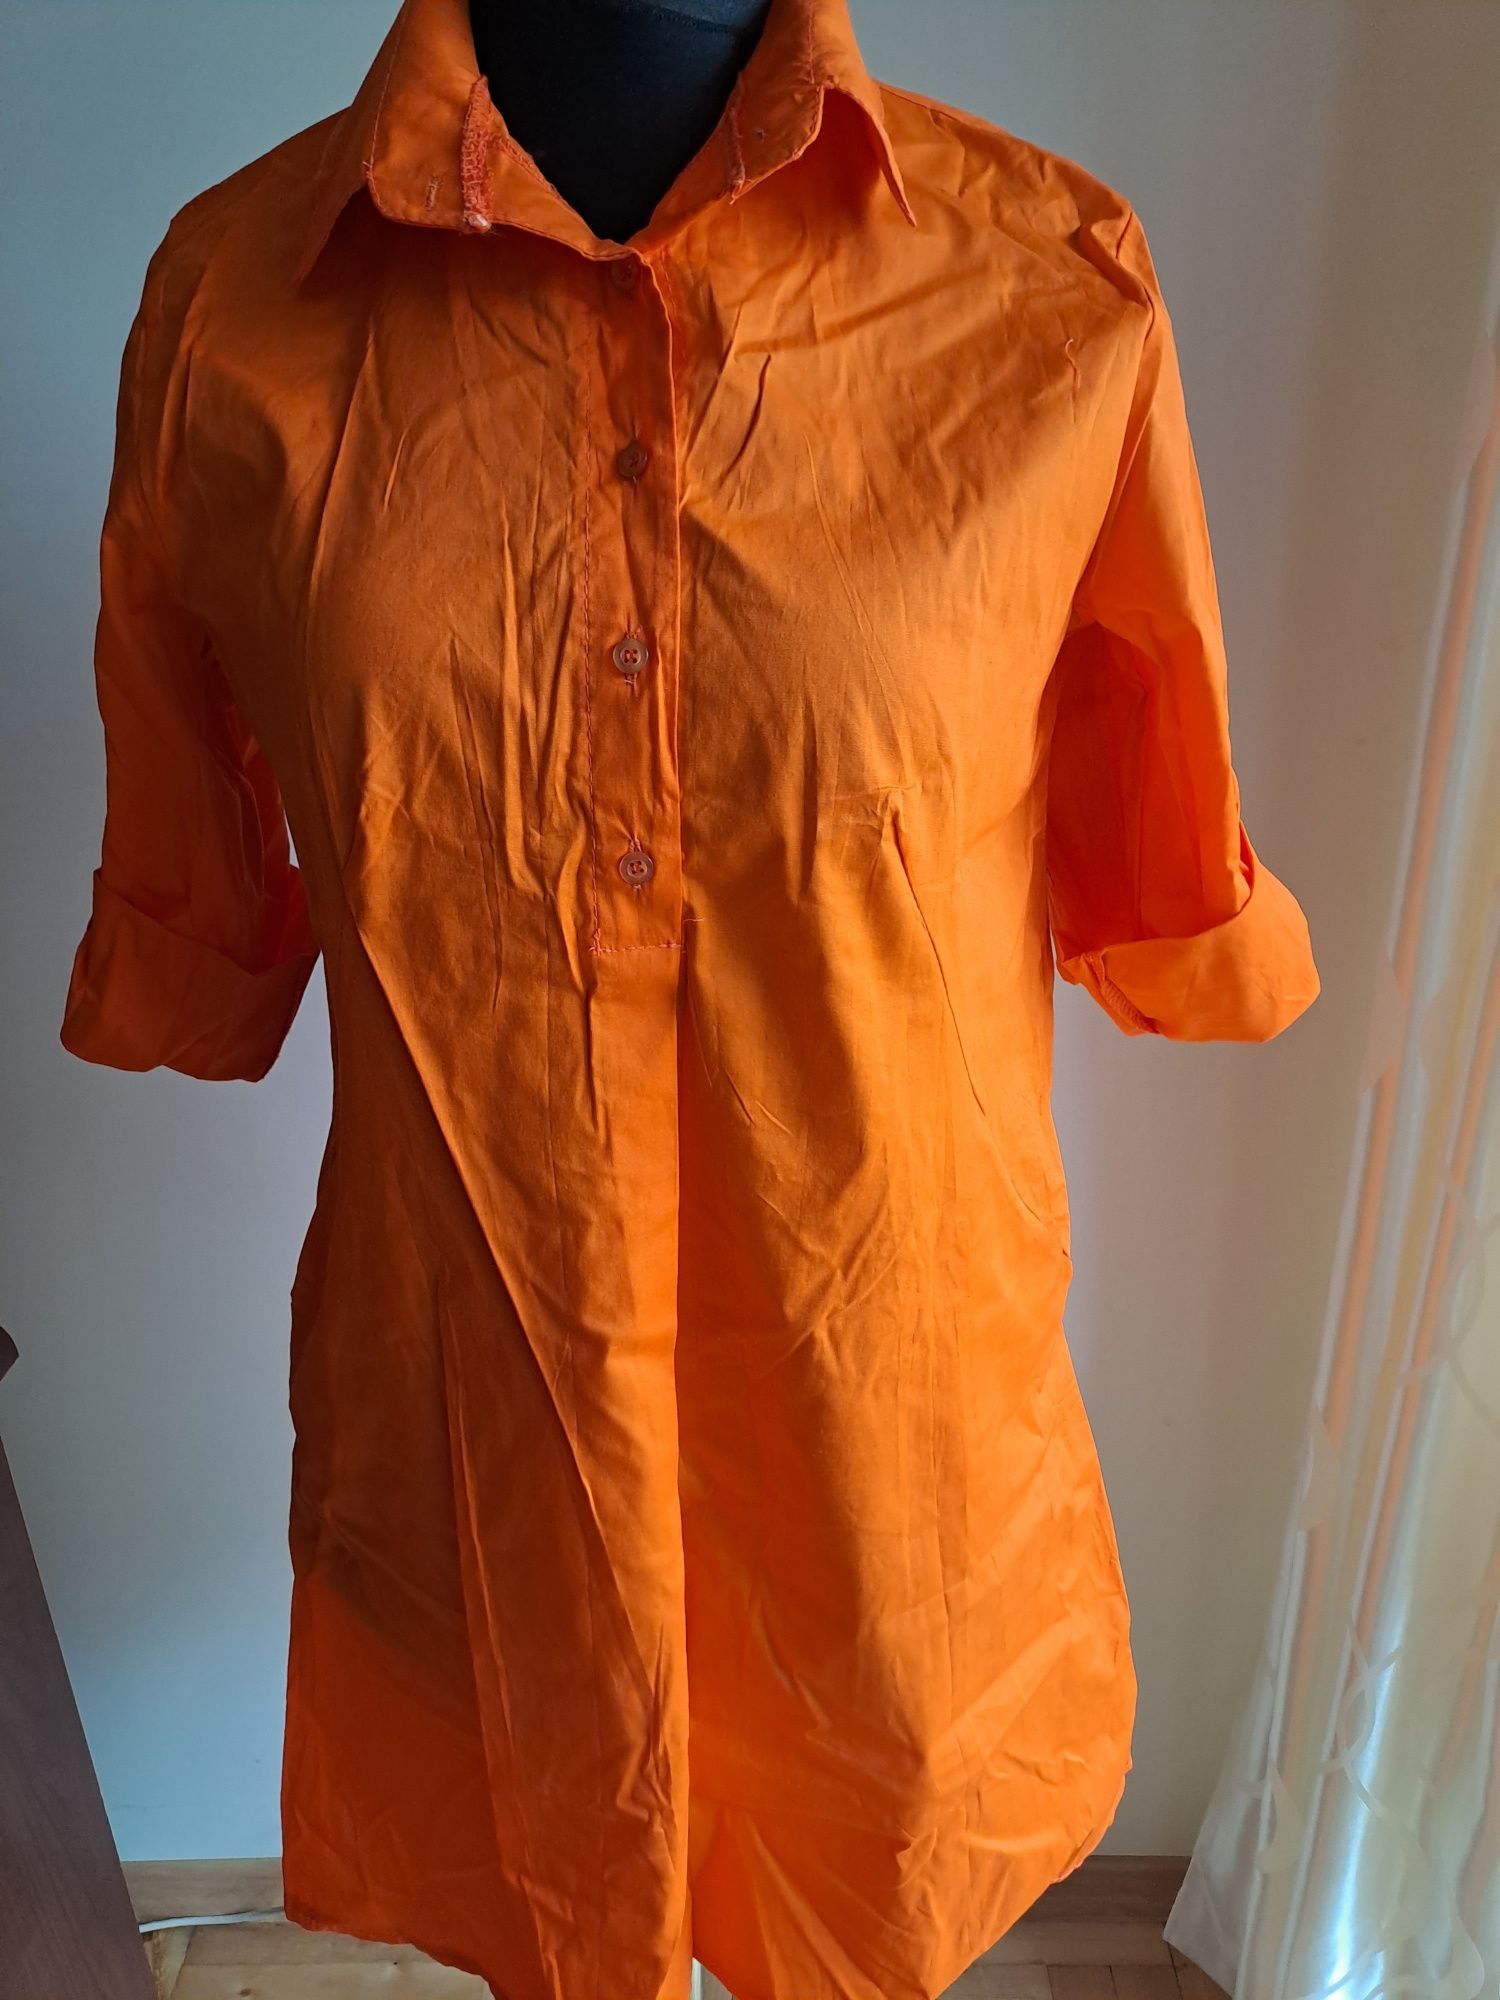 Pomarańczowa sukienka